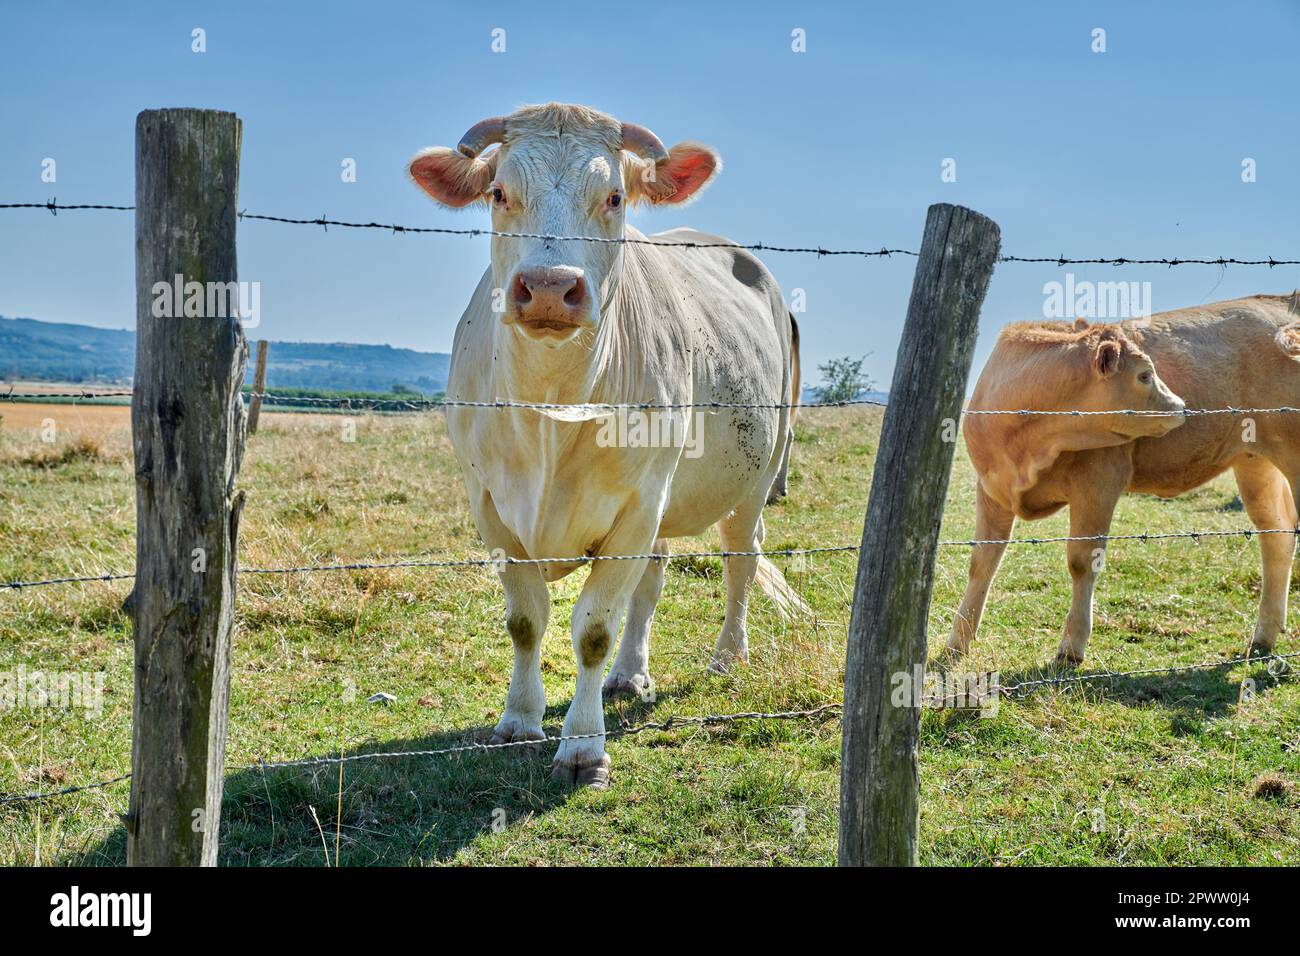 Allevamento e allevamento di animali da allevamento nel settore agroalimentare per l'industria bovina e lattiero-casearia. Curiosa mucca, una vacca charolais bianca in piedi dietro un filo di barbo Foto Stock